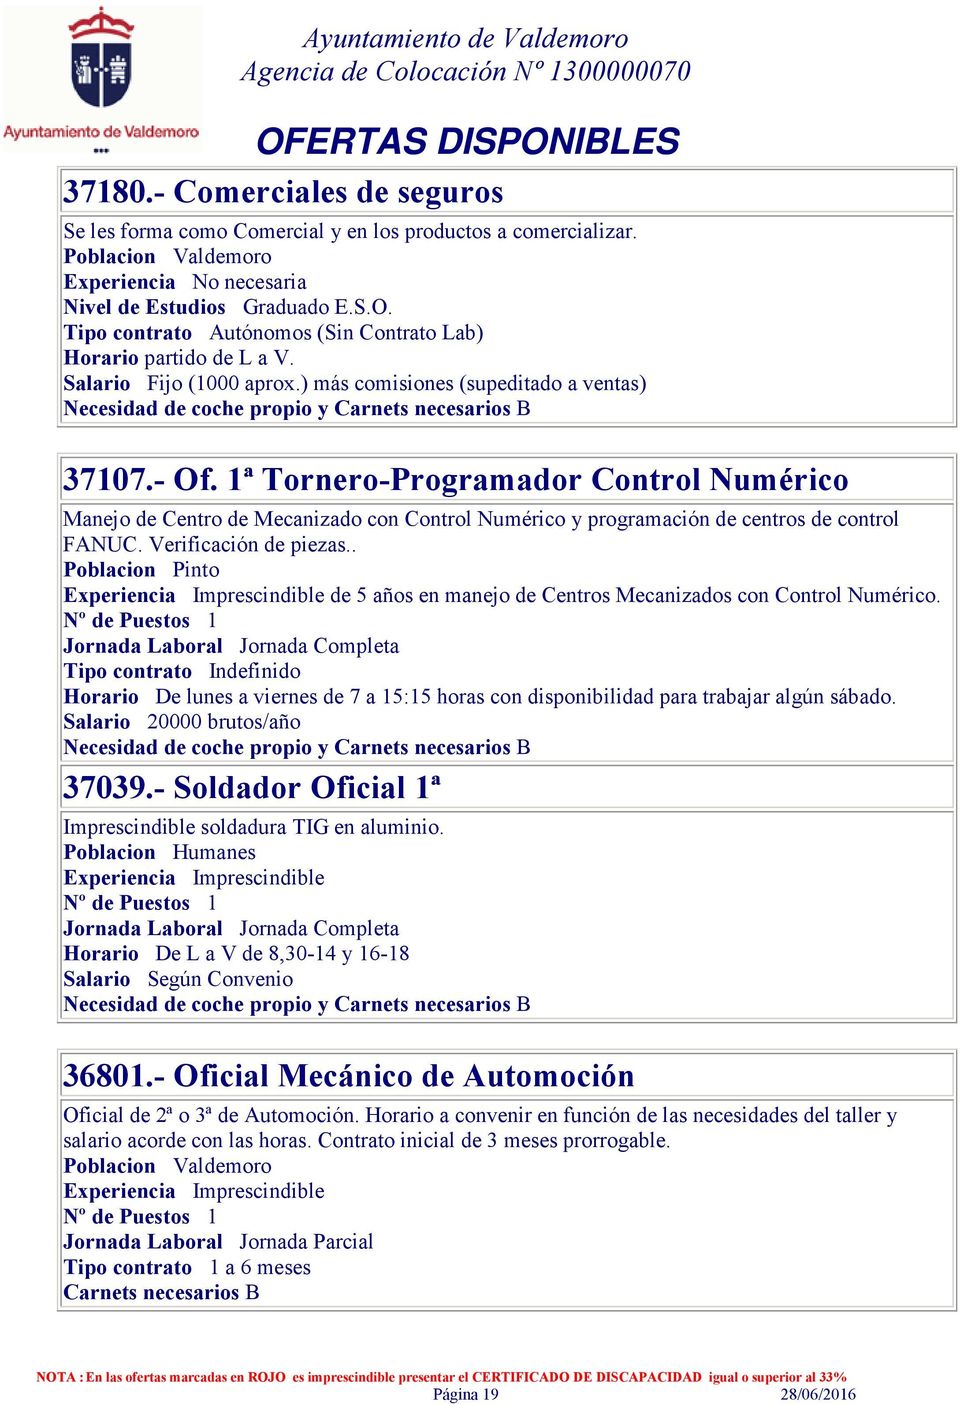 1ª Tornero-Programador Control Numérico Manejo de Centro de Mecanizado con Control Numérico y programación de centros de control FANUC. Verificación de piezas.